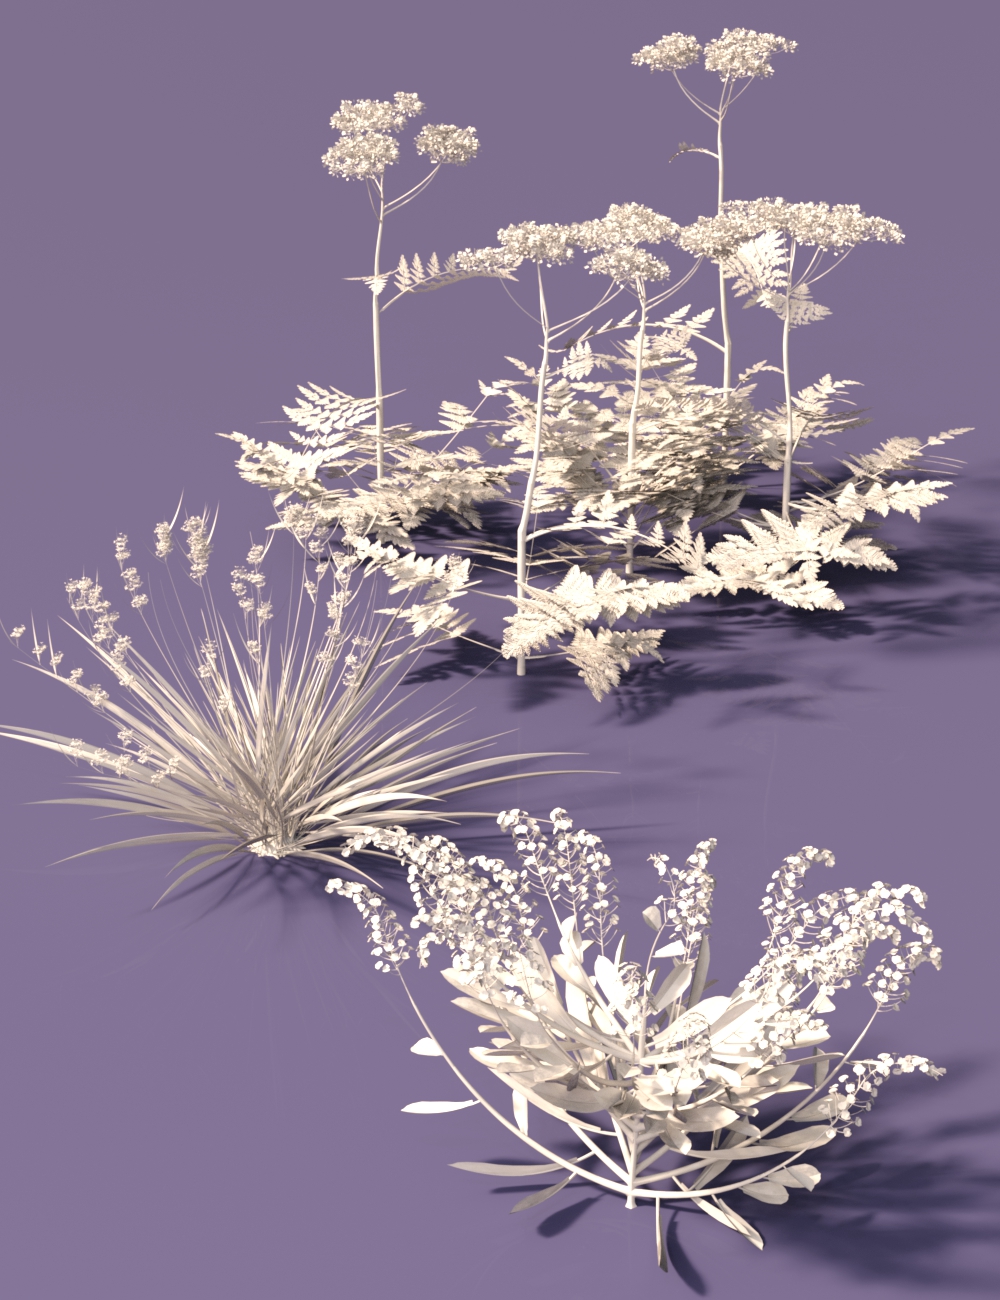 Woodland Wild Flower Plants for Daz Studio by: MartinJFrost, 3D Models by Daz 3D